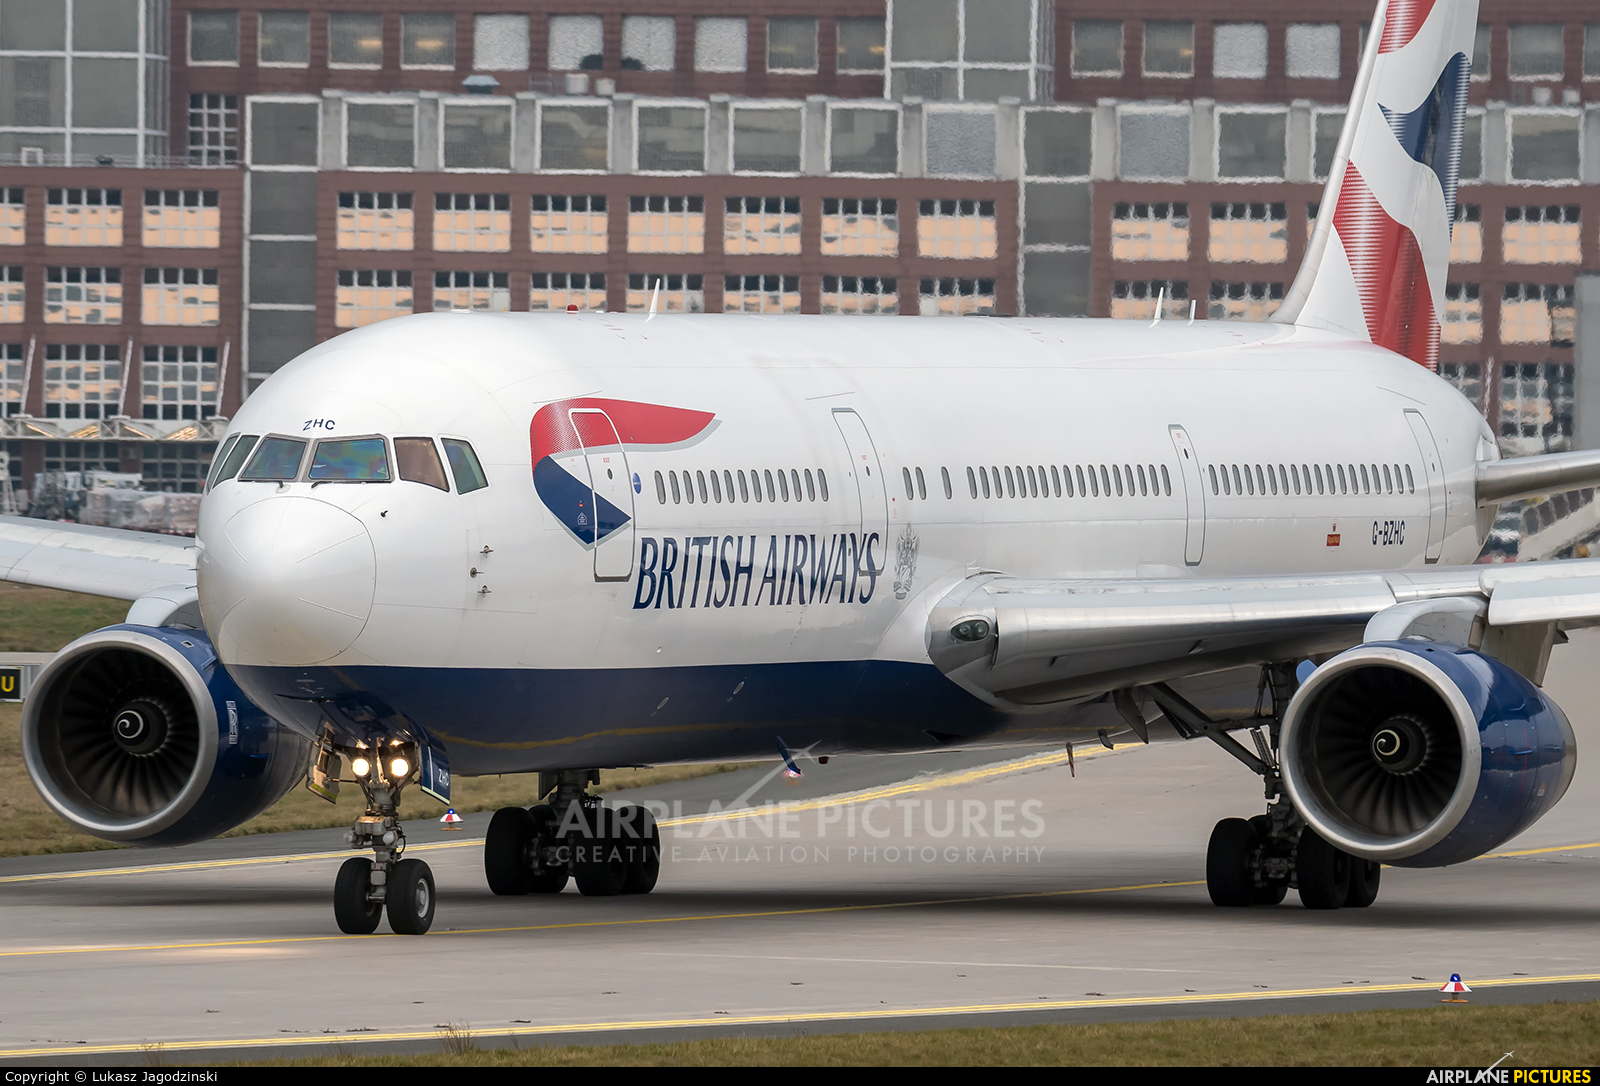 British Airways G-BZHC aircraft at Frankfurt